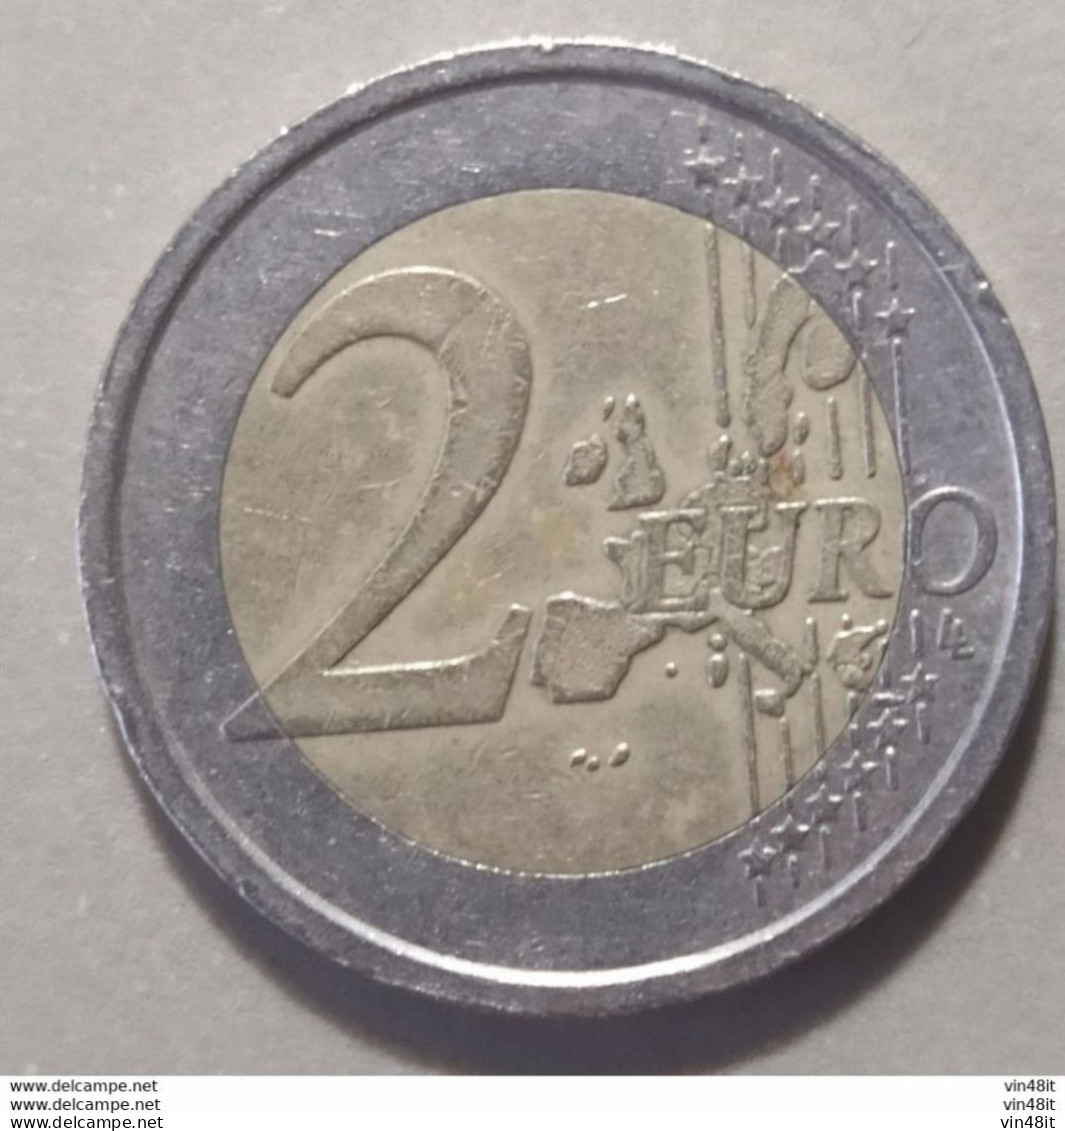 2012 - AUSTRIA  - MONETA IN EURO  - COMMEMORATIVA  - DEL VALORE DI  2,00  EURO  -  USATA - Austria